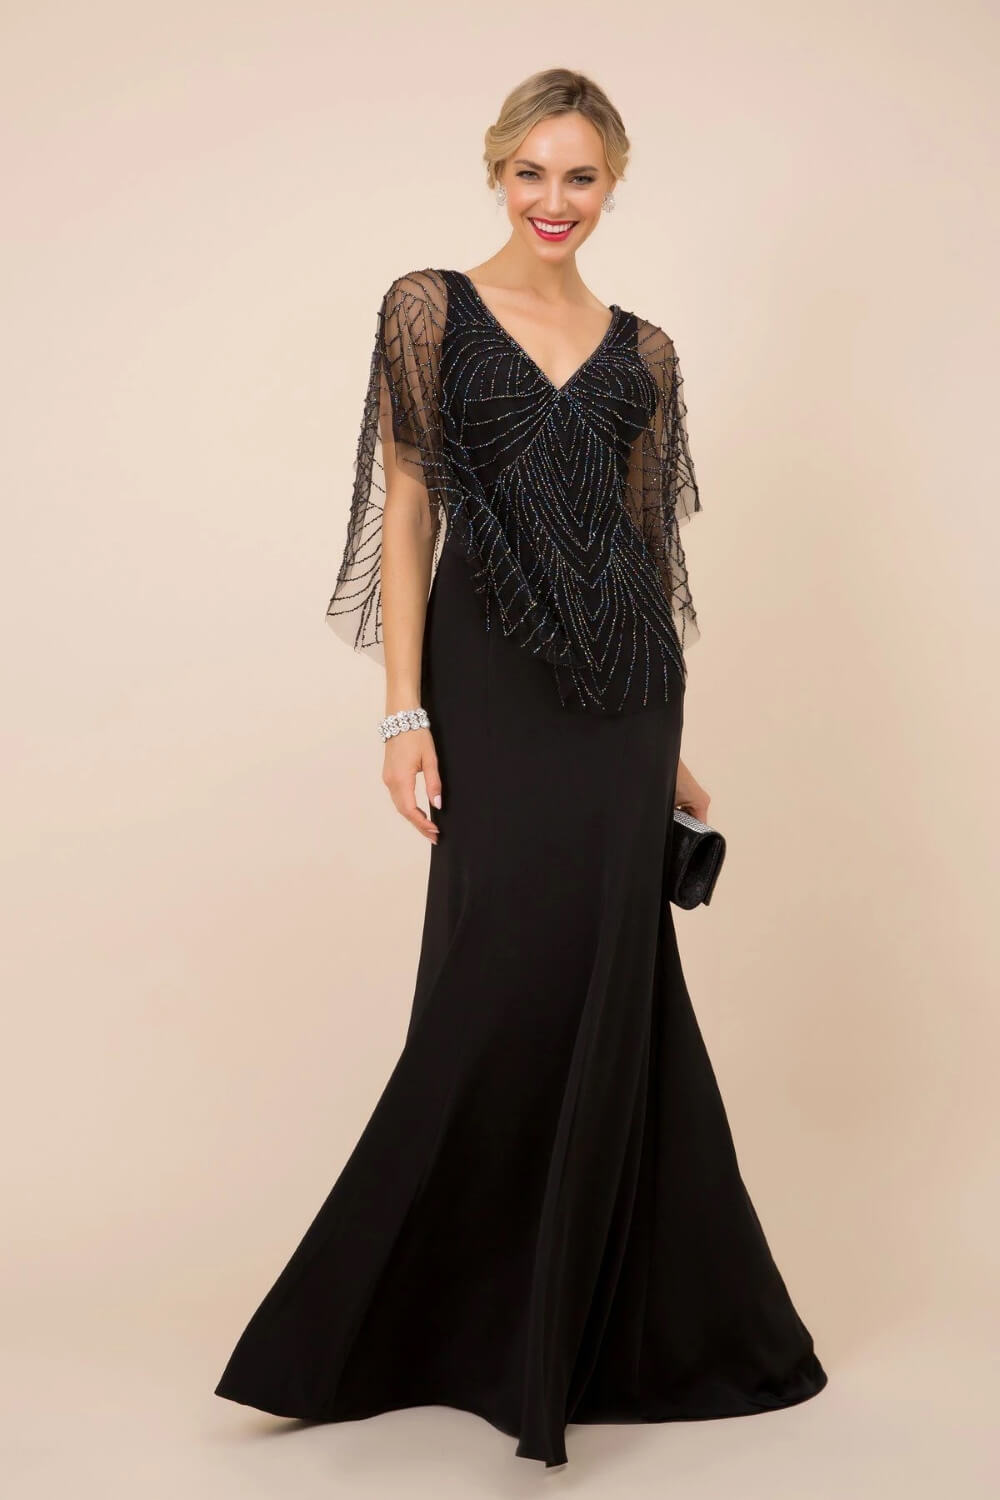 Luce un look señorial, elegante y solemne con este precioso vestidos de fiesta largo de color negro